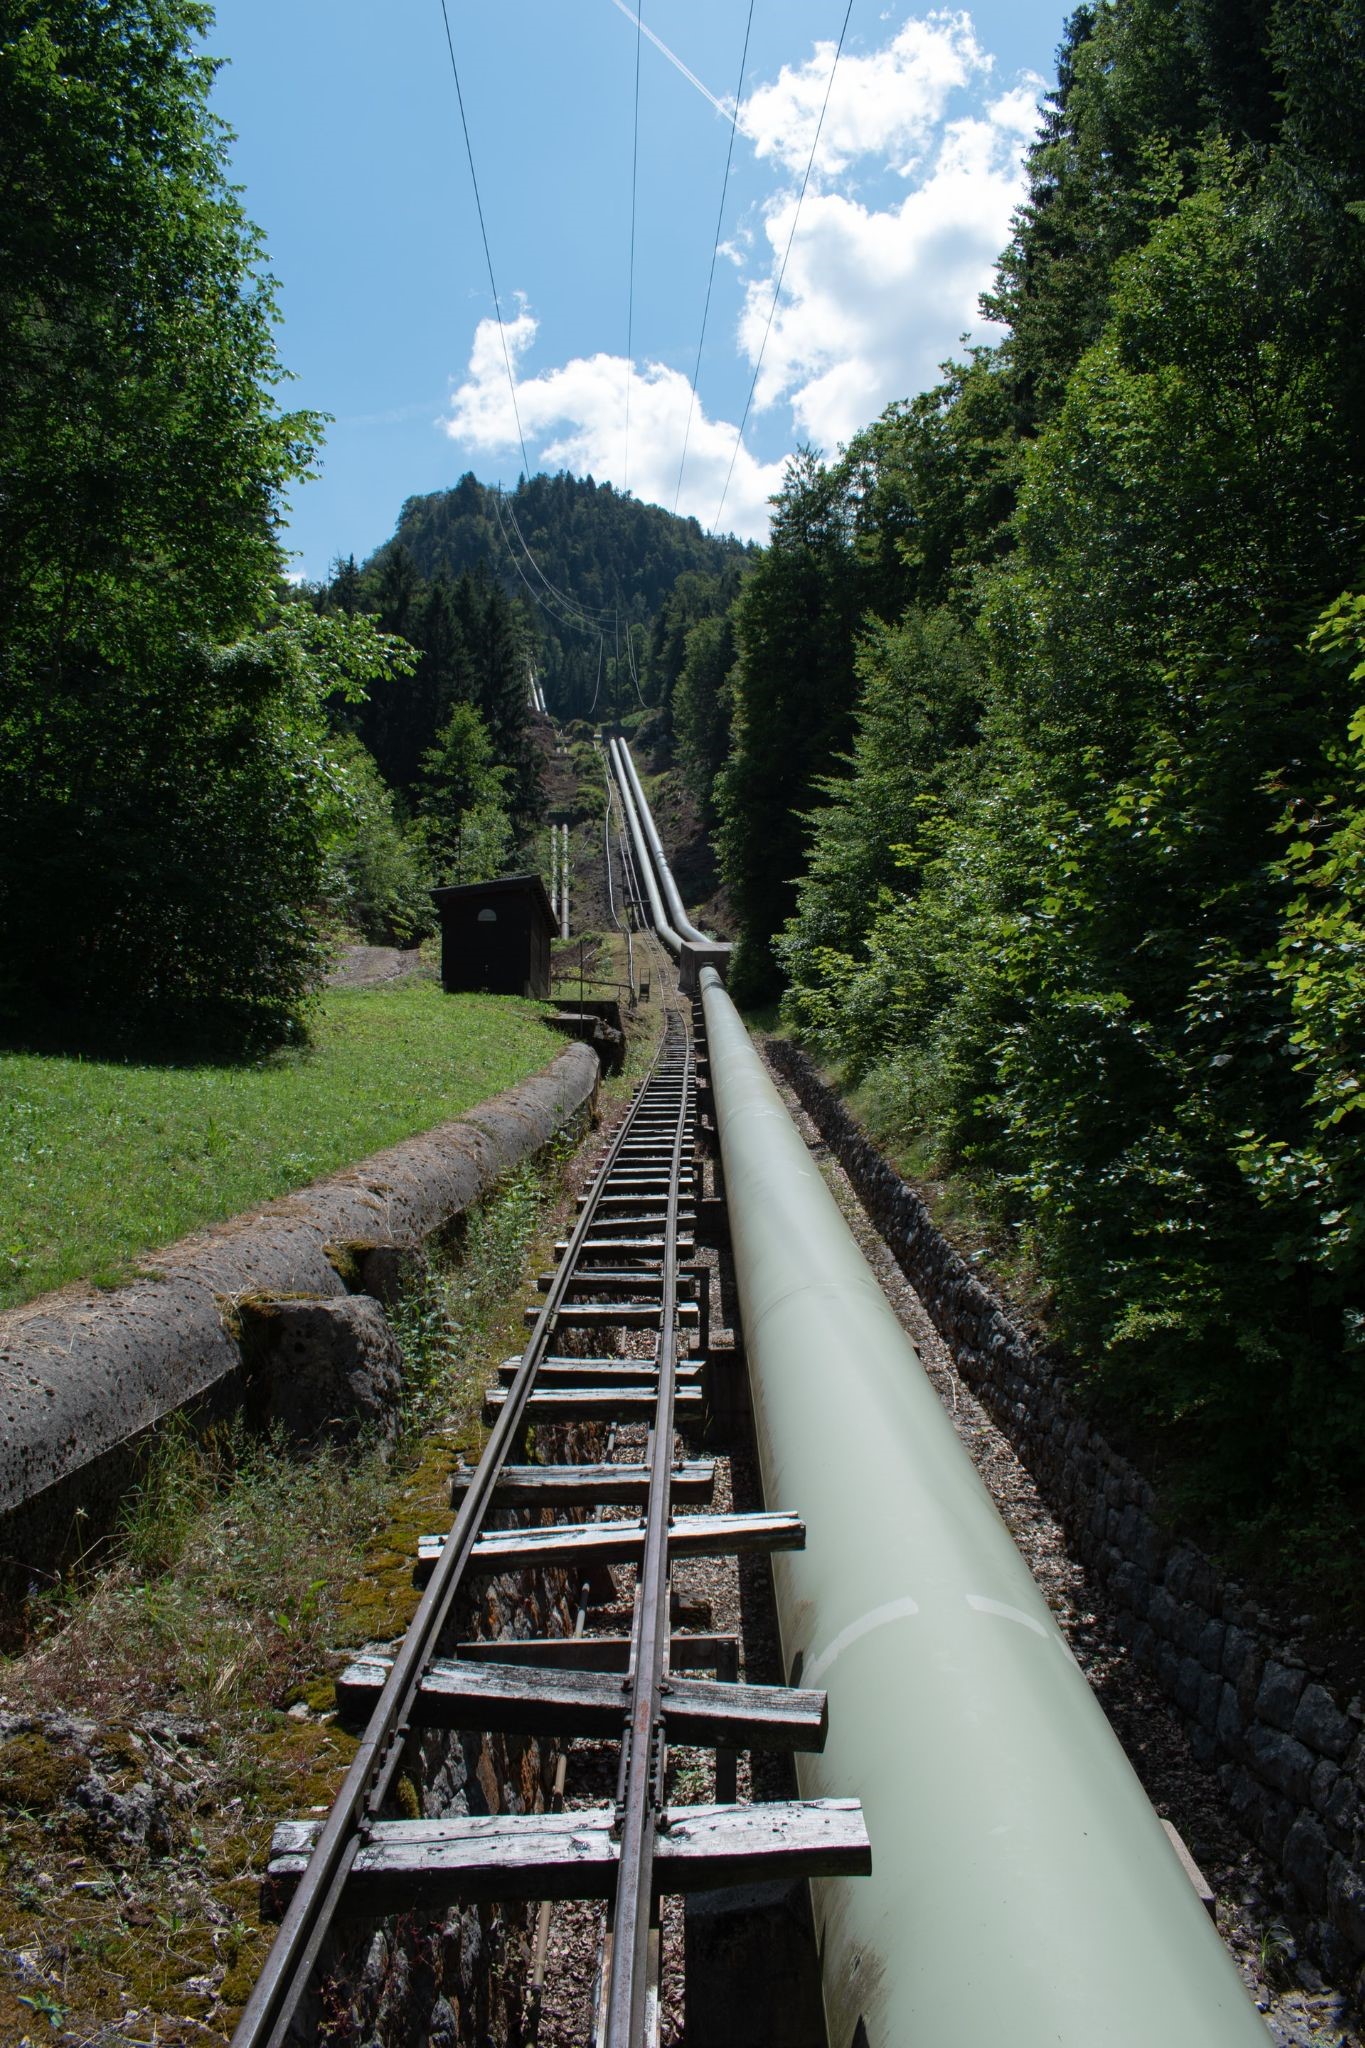 A pipeline with mowed turf alongside it